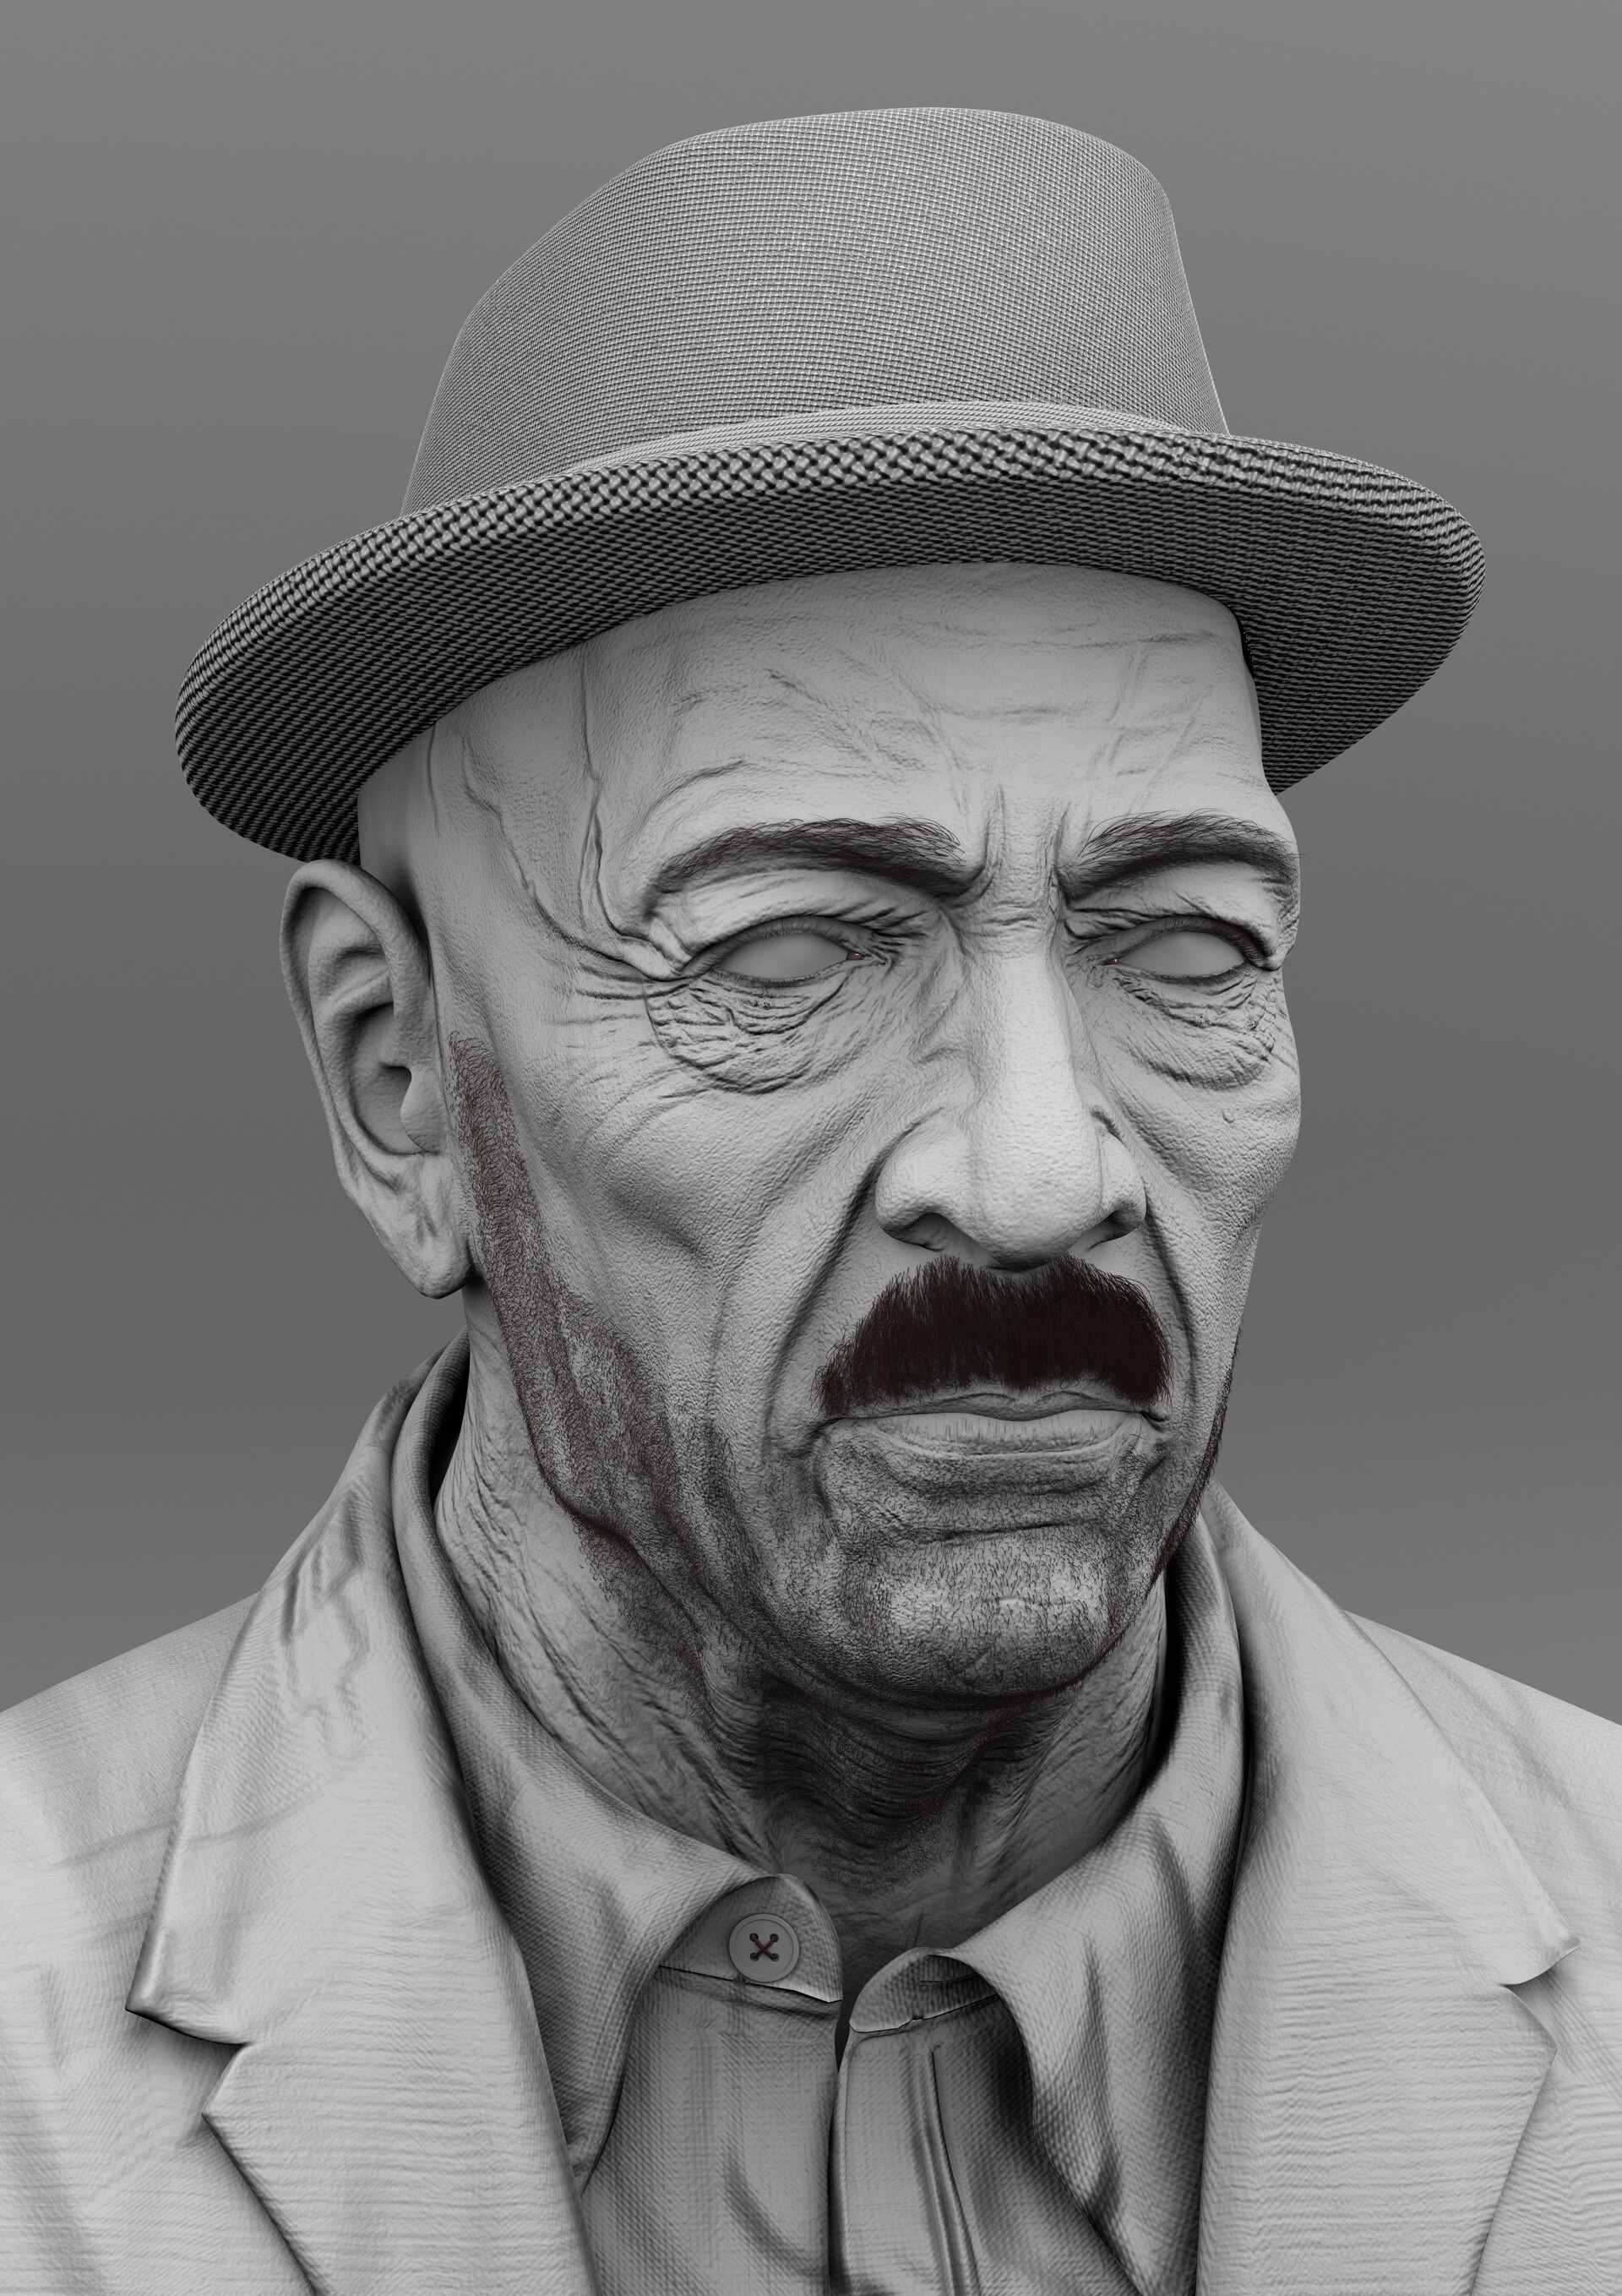 3D Hyper-realistic portrait.